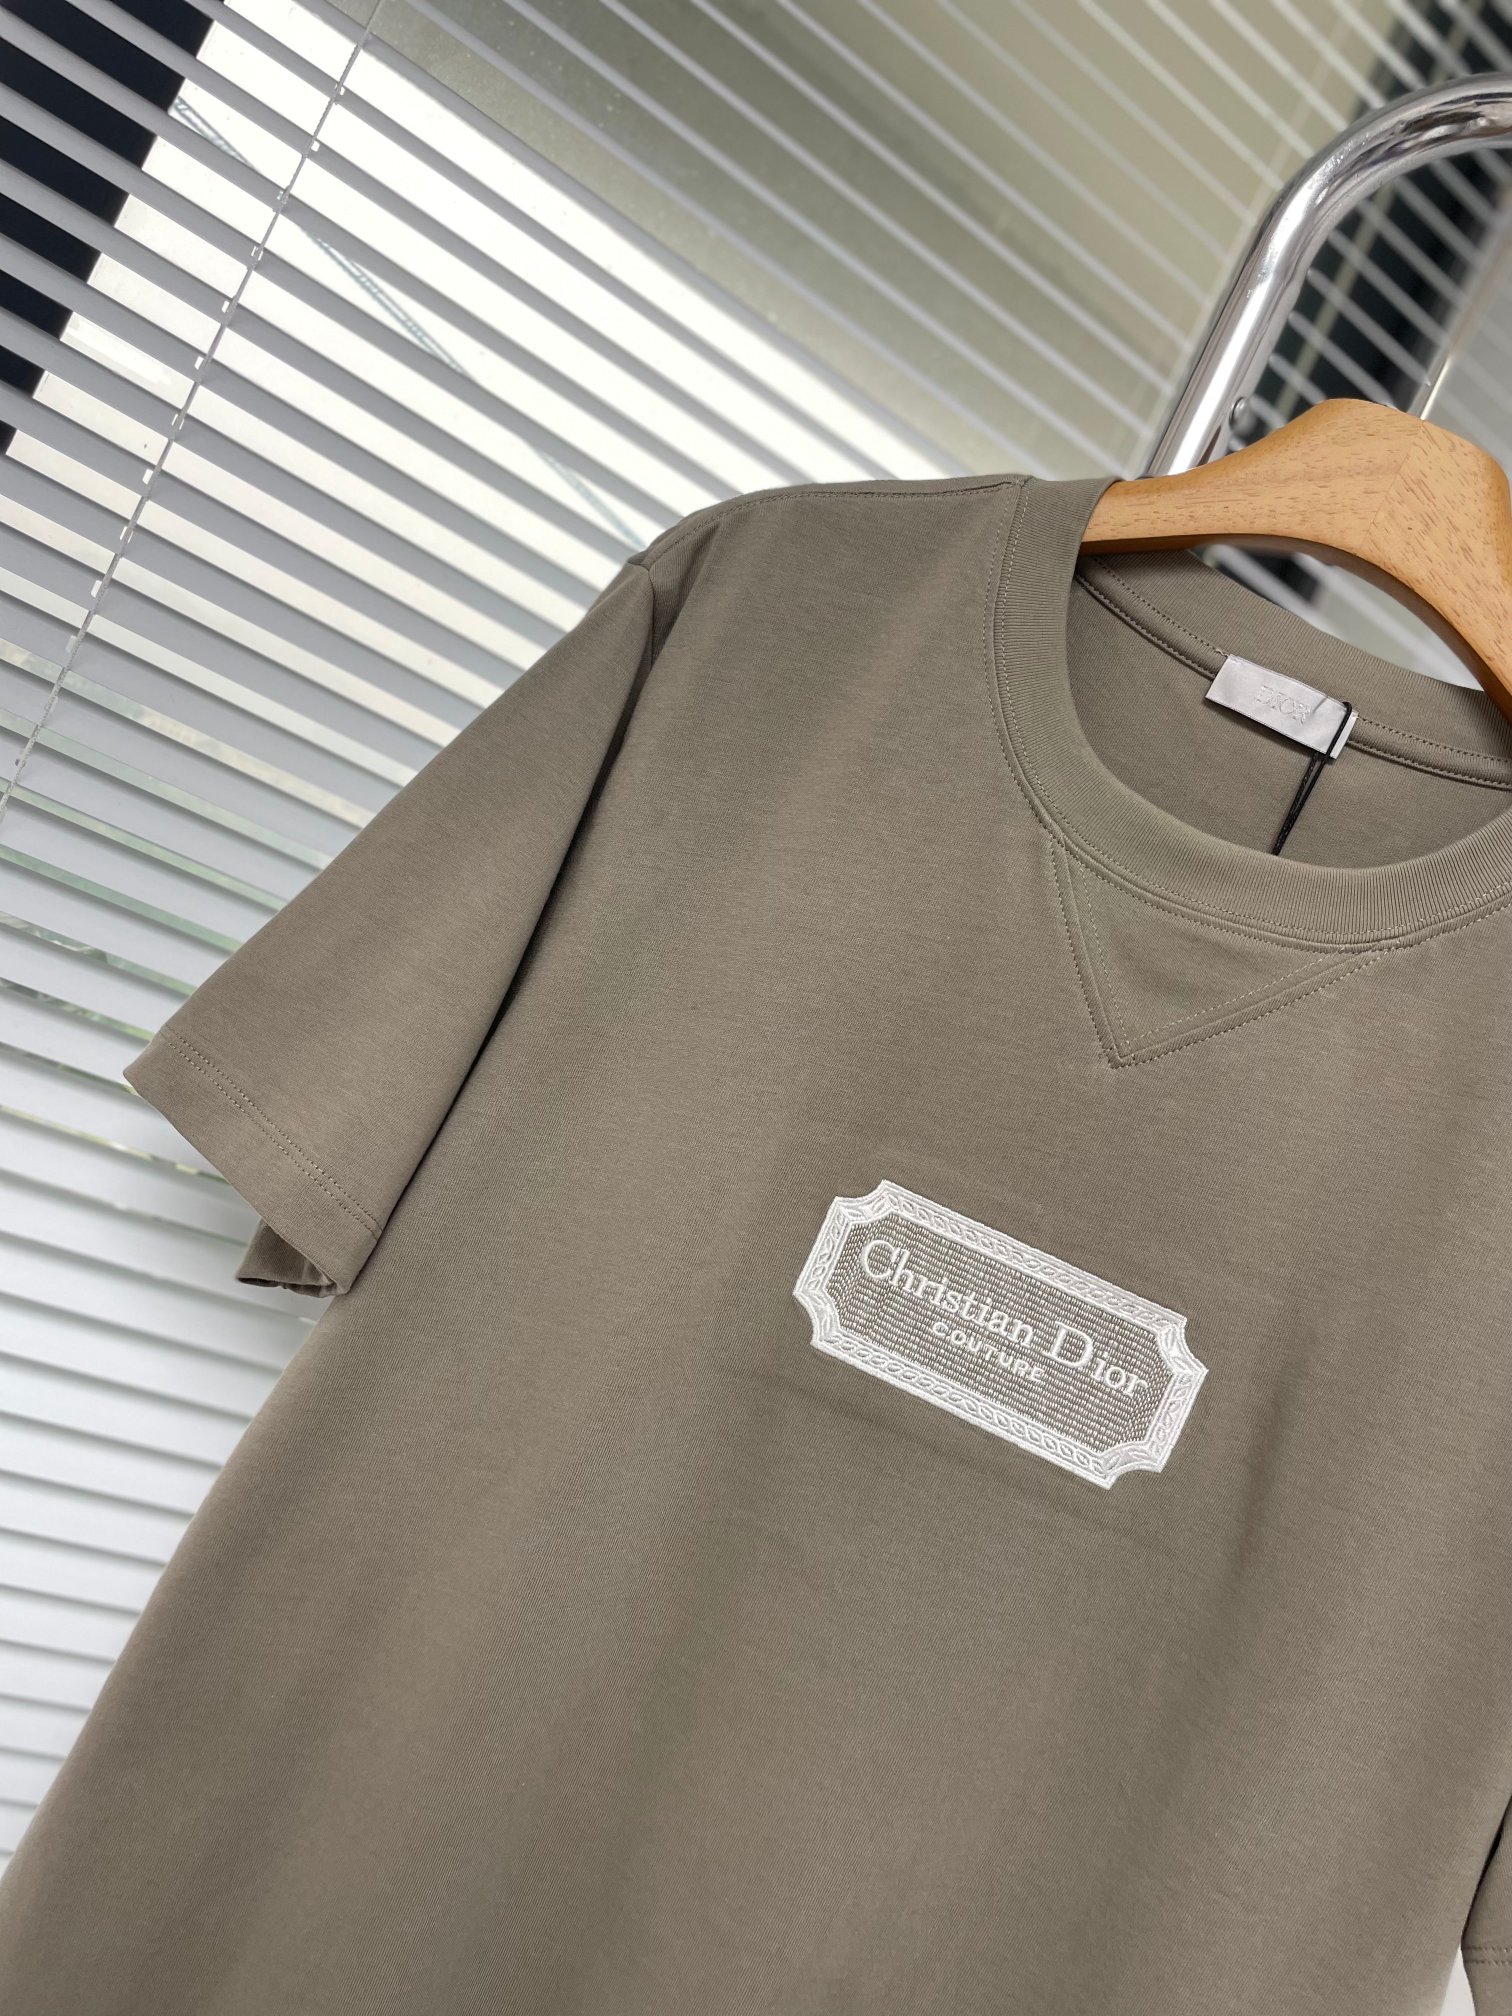 Diocouture刀片刺绣T恤本款采用原版定织26支双股纱成衣再洗水后处理工艺面料克重达到320克标志